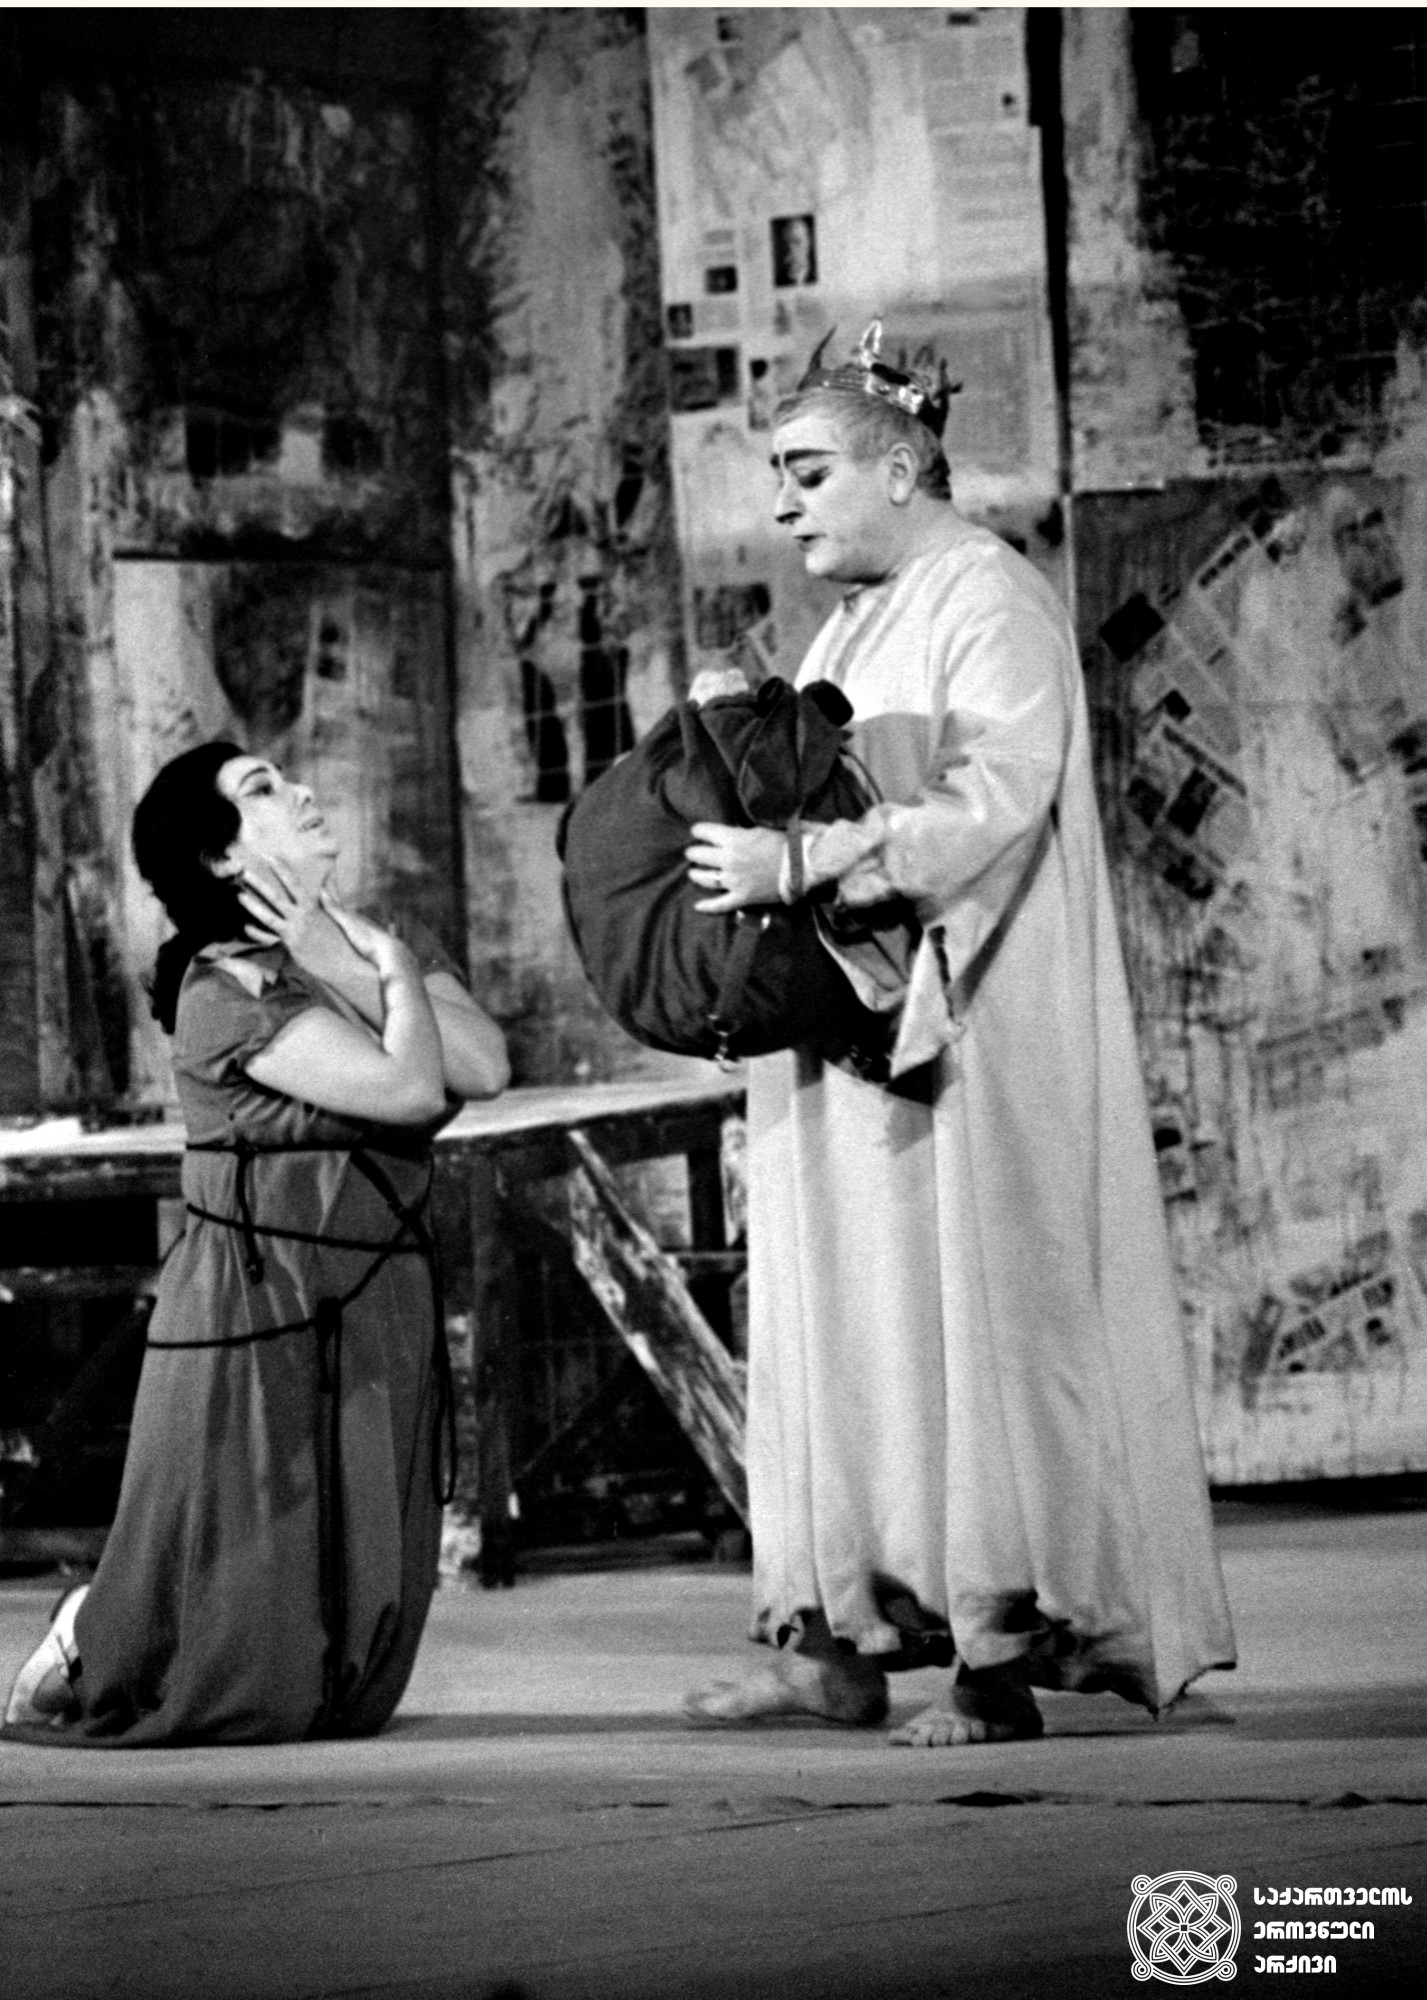 სცენა სპექტაკლიდან „ყვარყვარე“. ყვარყვარე - რამაზ ჩხიკვაძე. ლირსა - ლიკა ჭავჭავაძე. <br>
1974 წელი. <br> 

Scene from the play "Kvarkvare". Kvarkvare- Ramaz Chkhikvadze. Lira - Lika Chavchavadze. <br>
1974. <br>